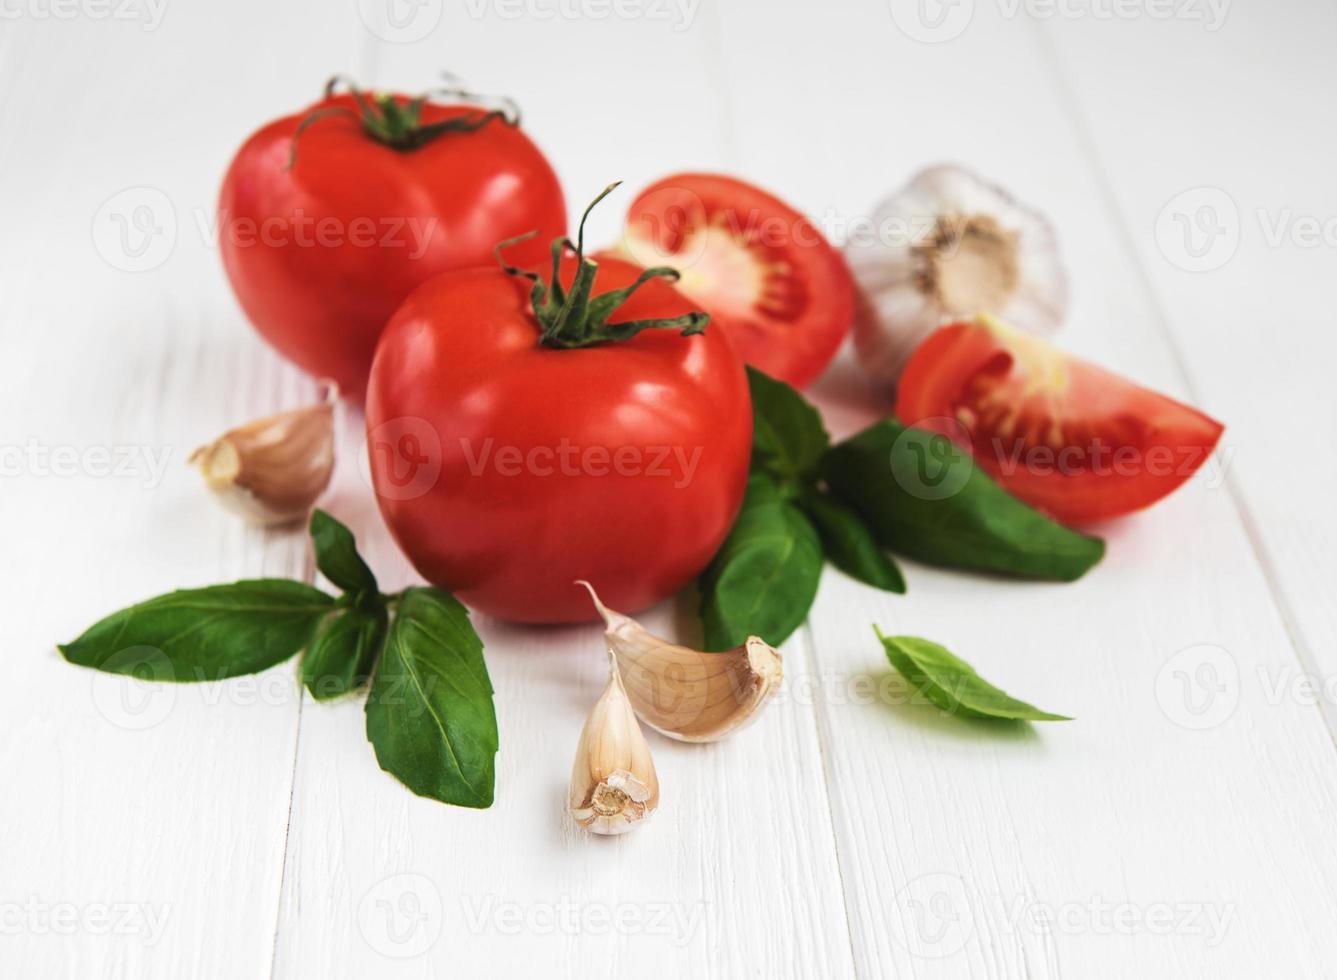 tomate e manjericão verde foto